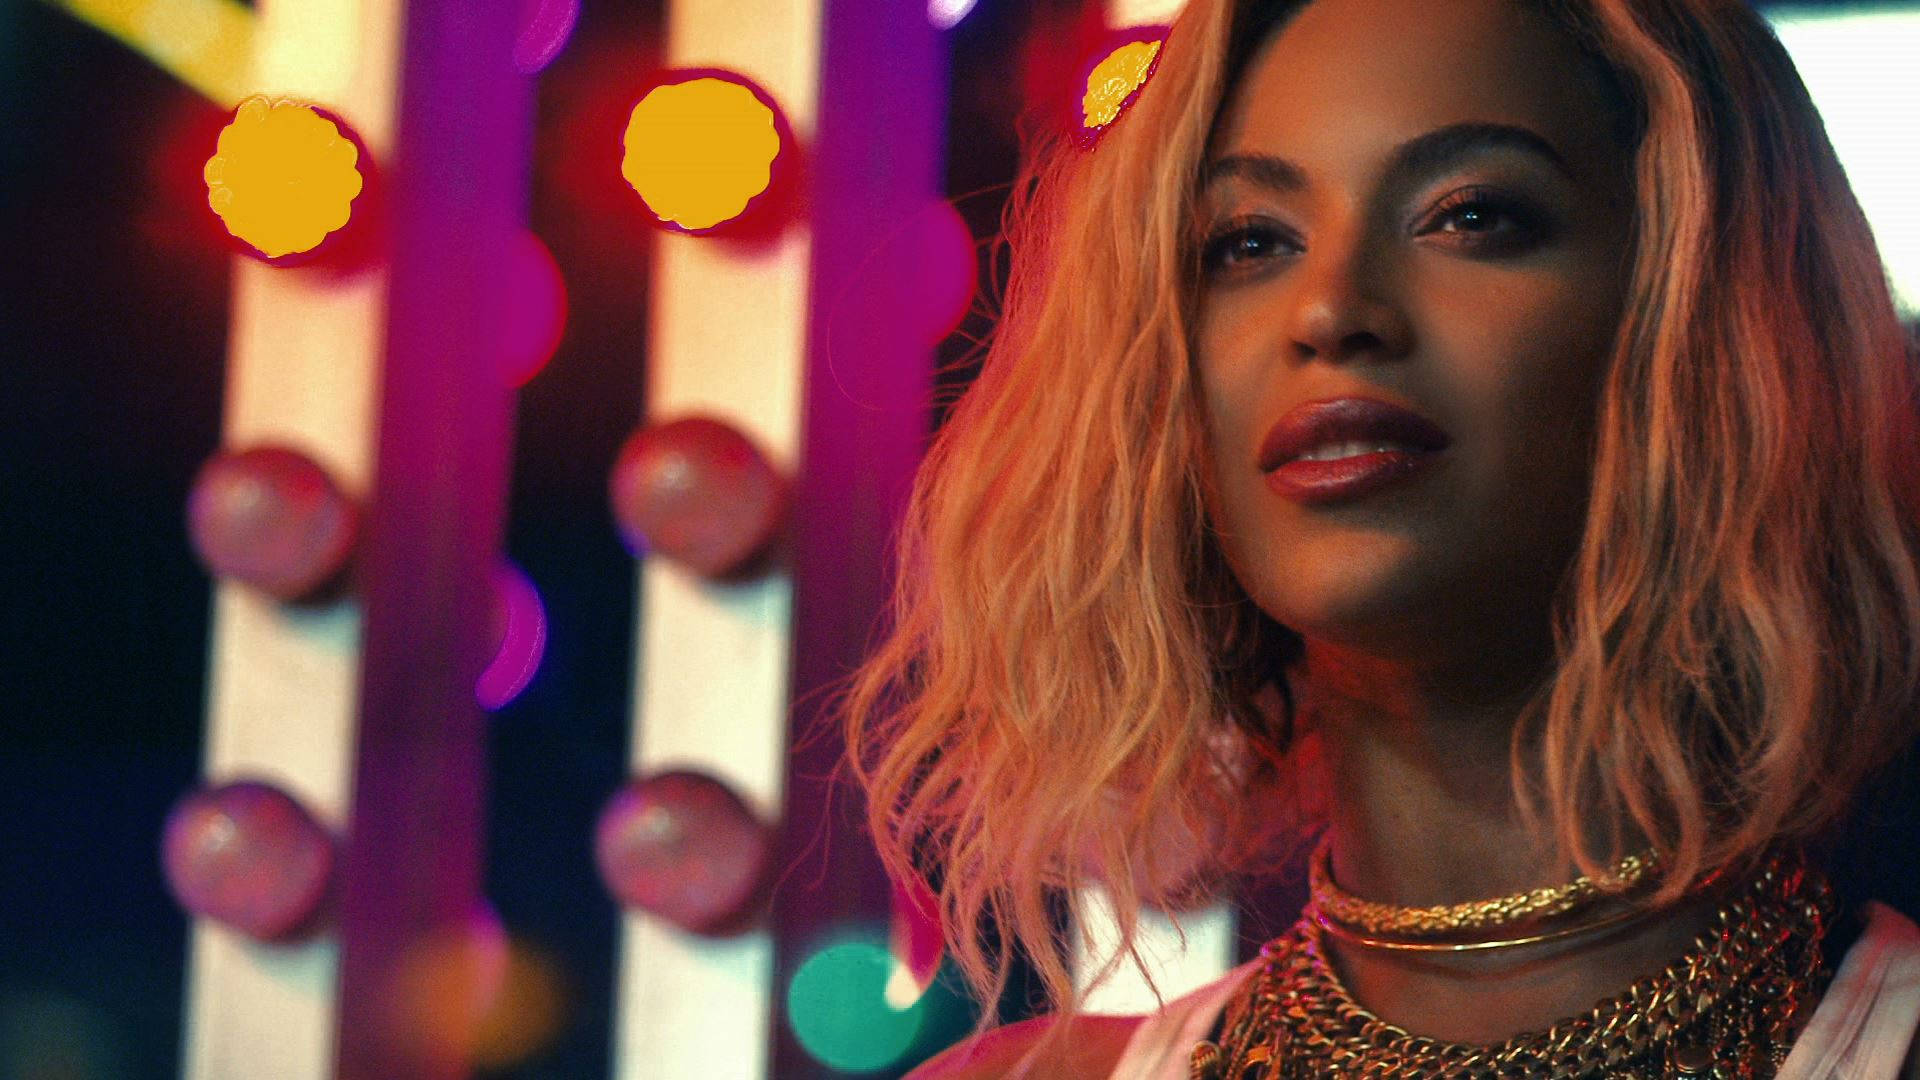 Beyonce - XO Music Video Wallpaper